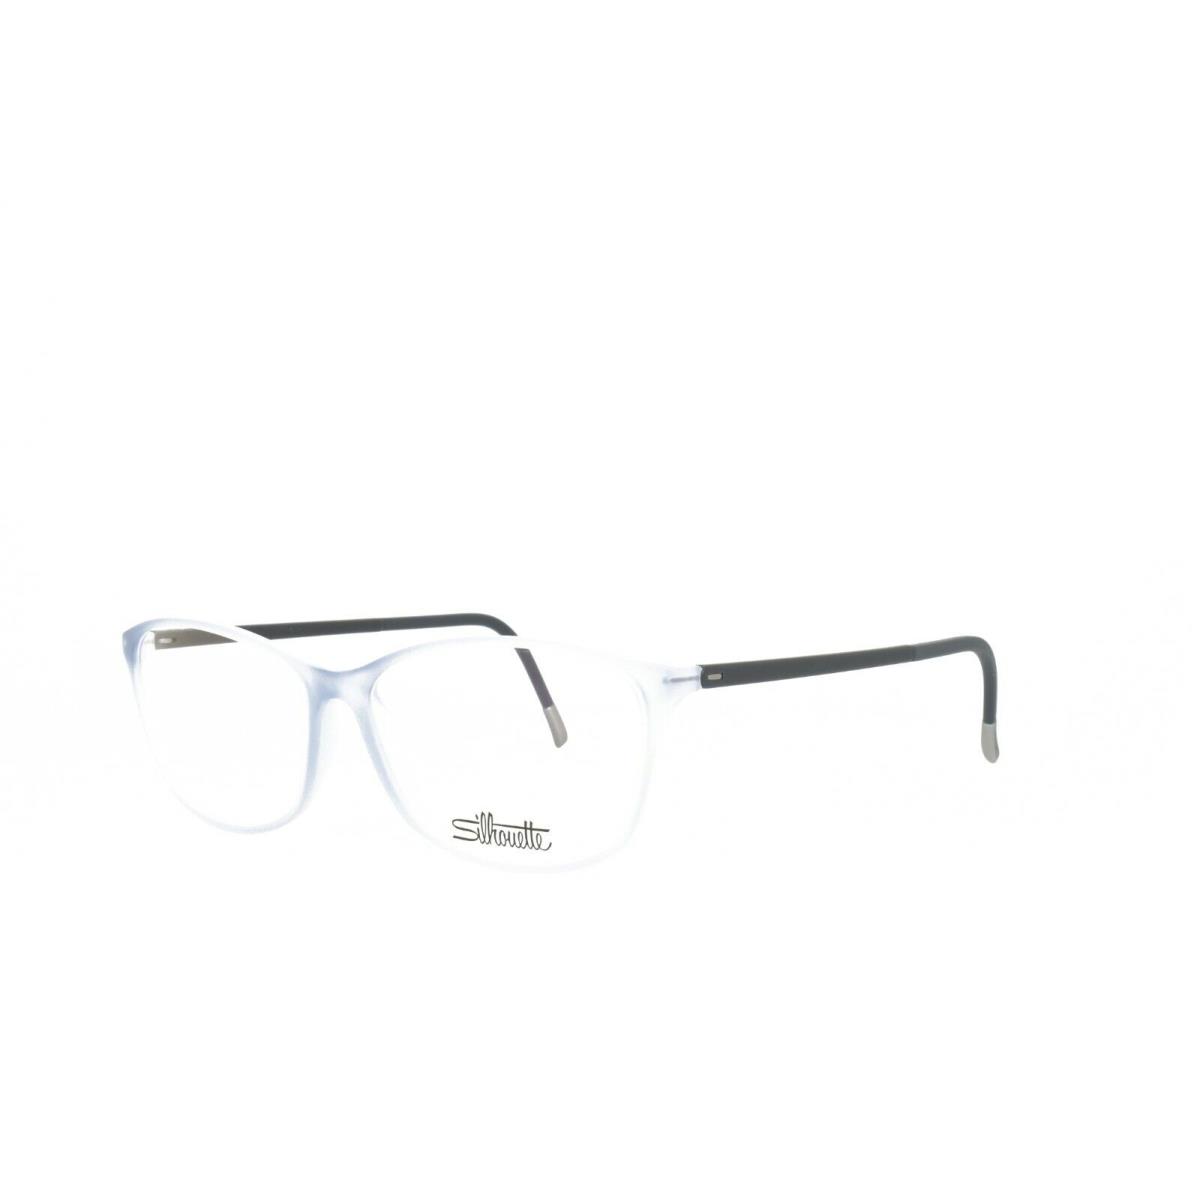 Silhouette Spx Illusion 1563 10 6109 Eyeglasses Frame 53-14-130 Light Blue